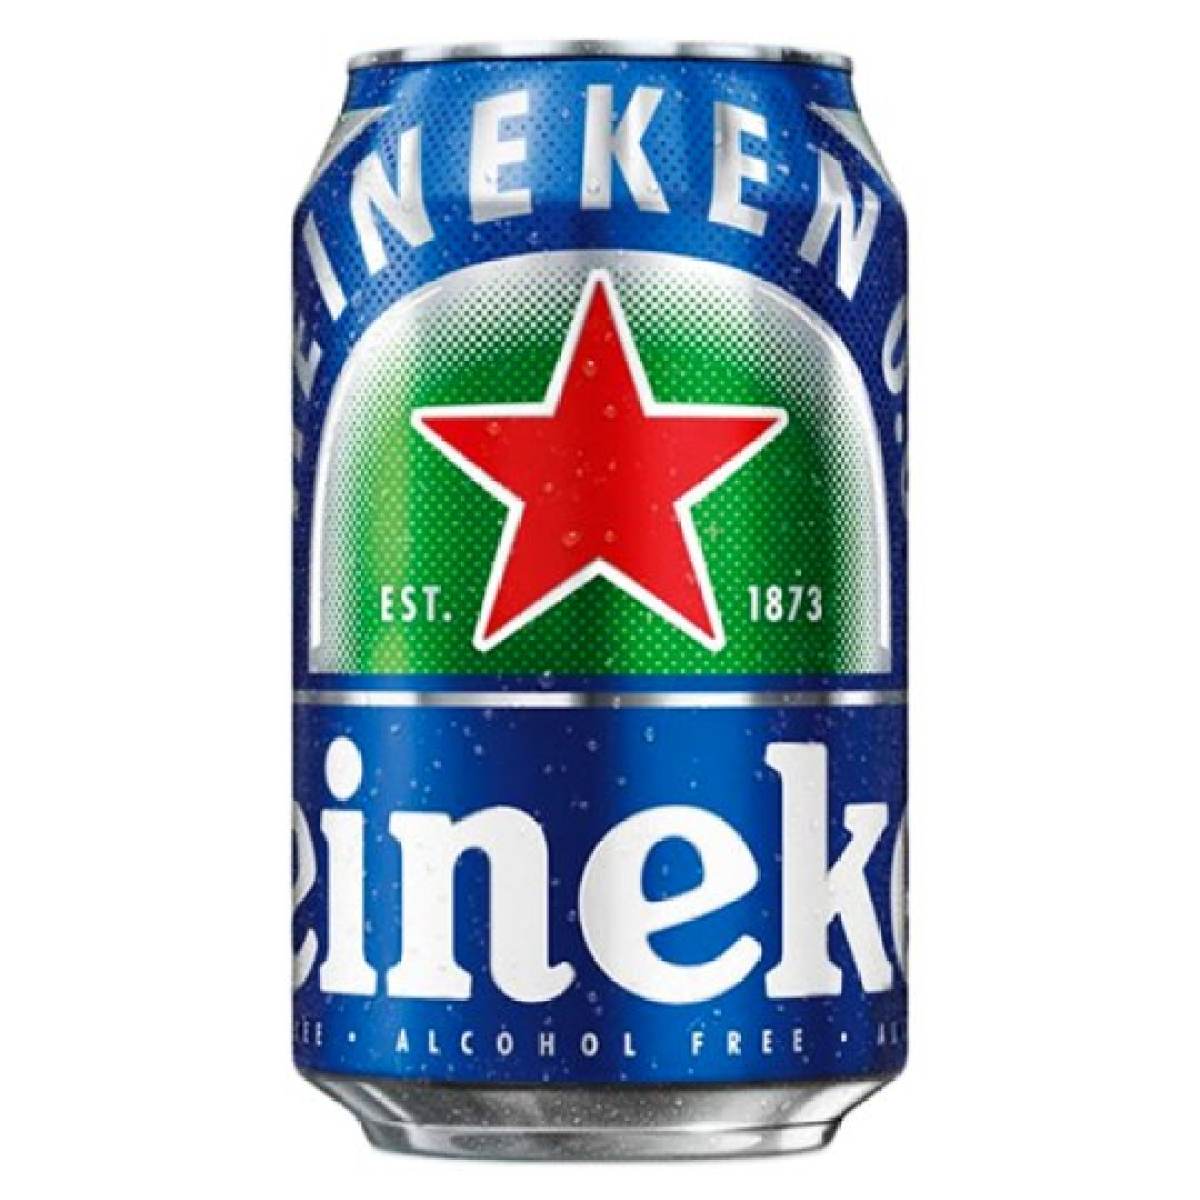 ไฮเนเก้น นอนแอลกอฮอล 0.0 เบียร์แคน 330มล. (1 กระป๋อง) Heineken Non Alcoholic 0.0 Beer Can 330ml.